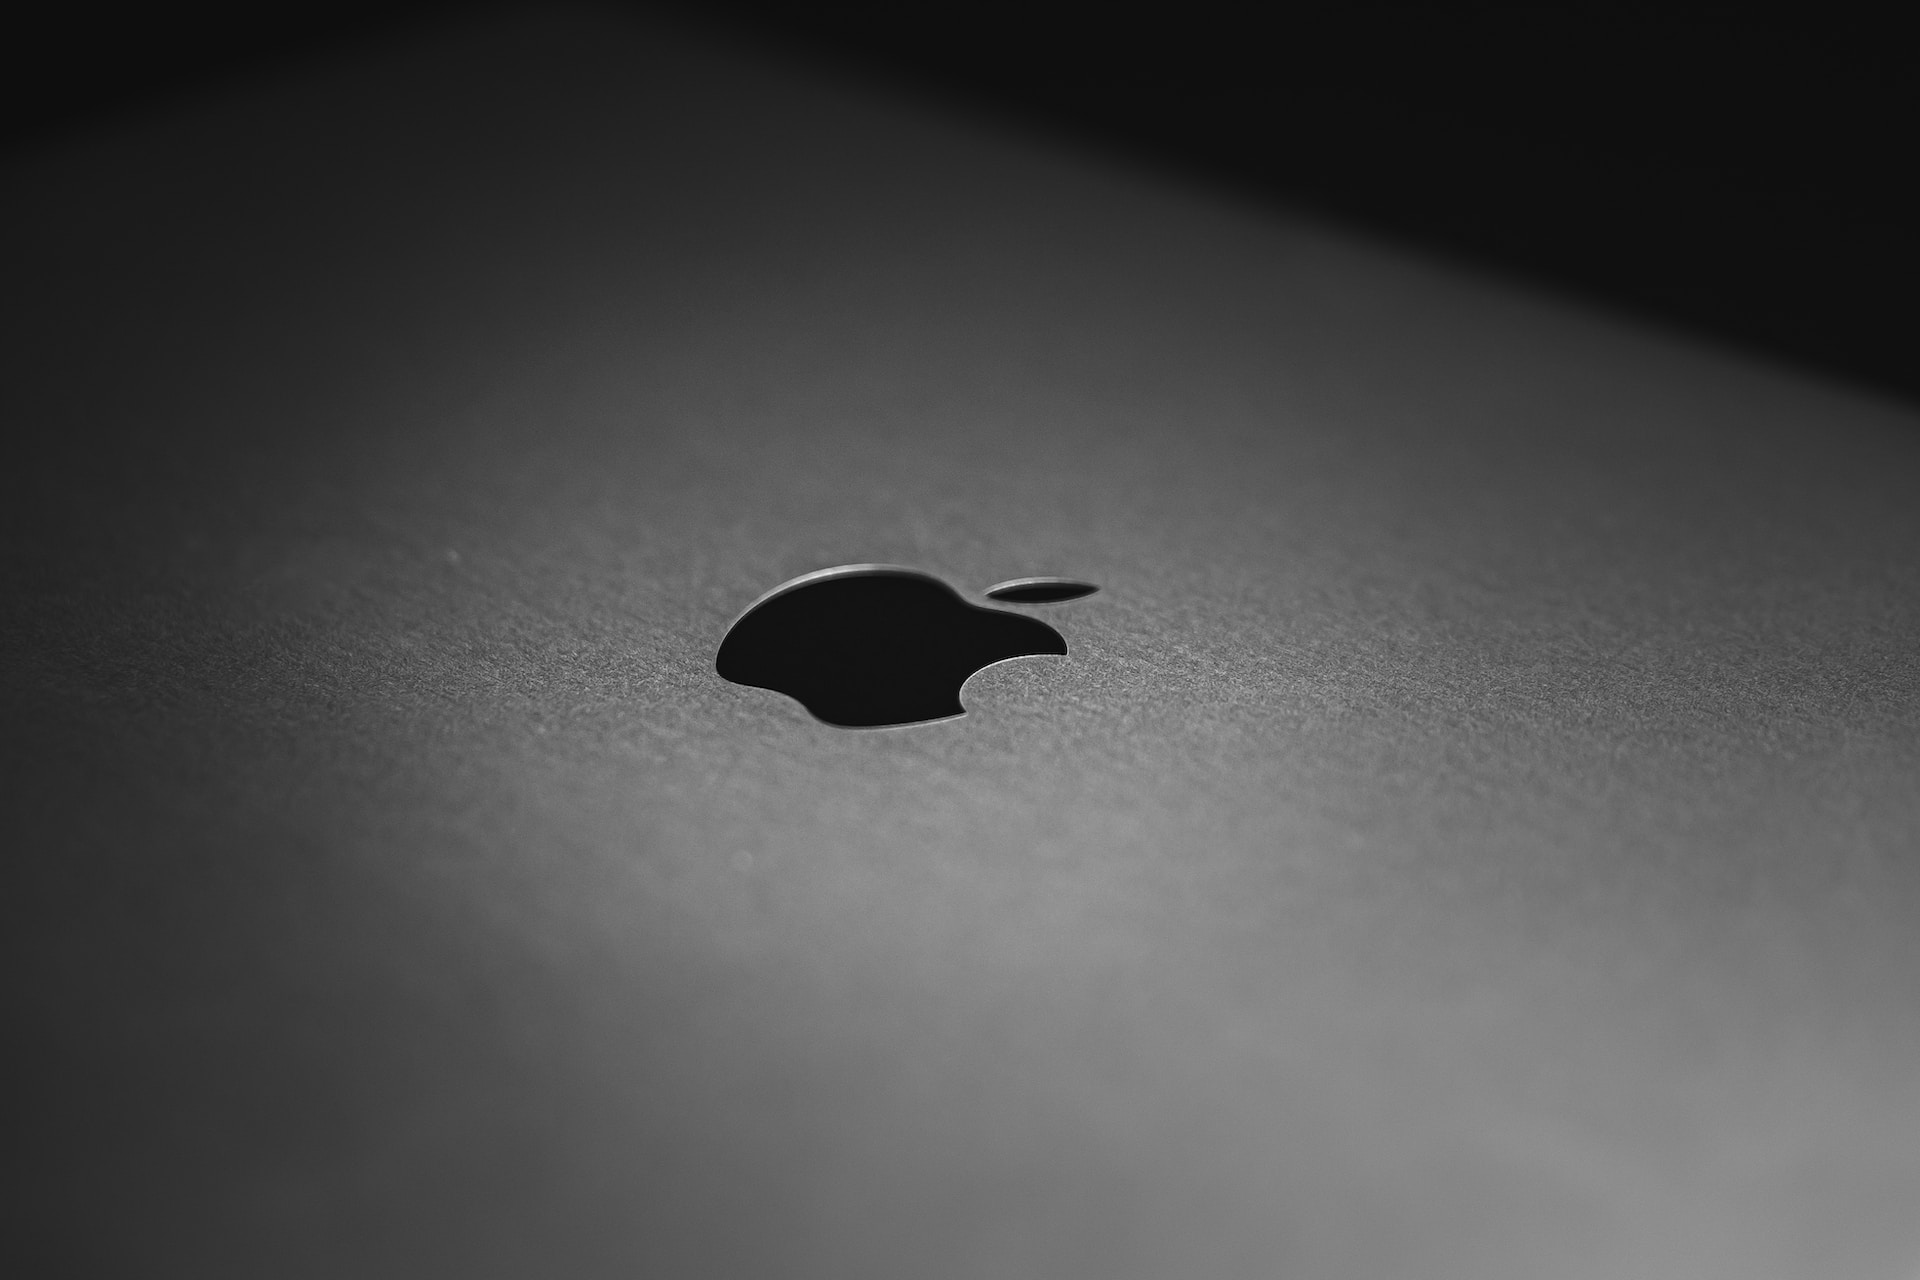 Odwiedź serwis Apple w Krakowie i dbaj o swoje urządzenia jak profesjonalista